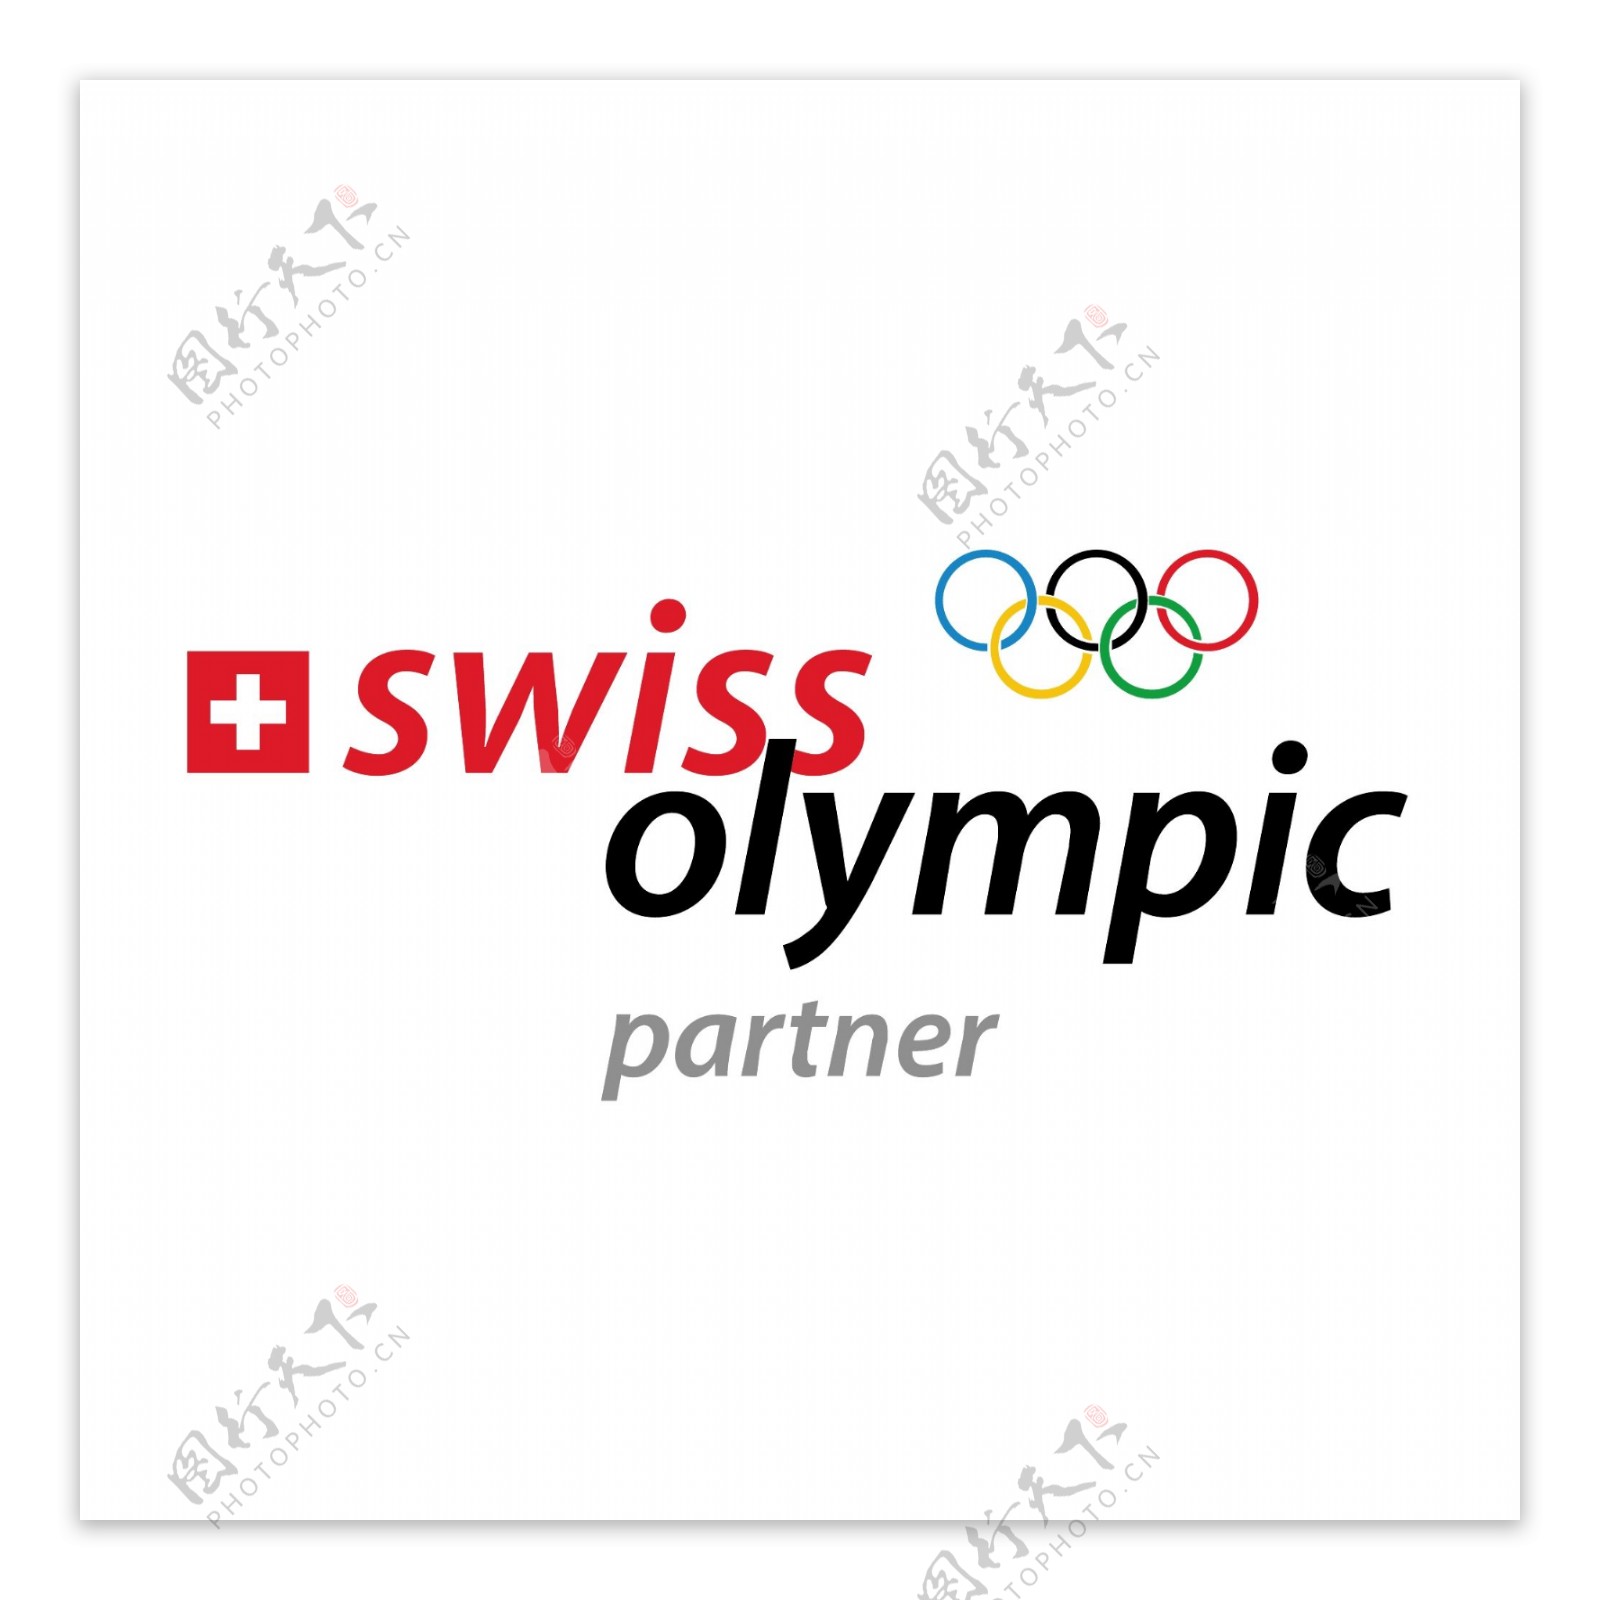 瑞士奥林匹克合作伙伴